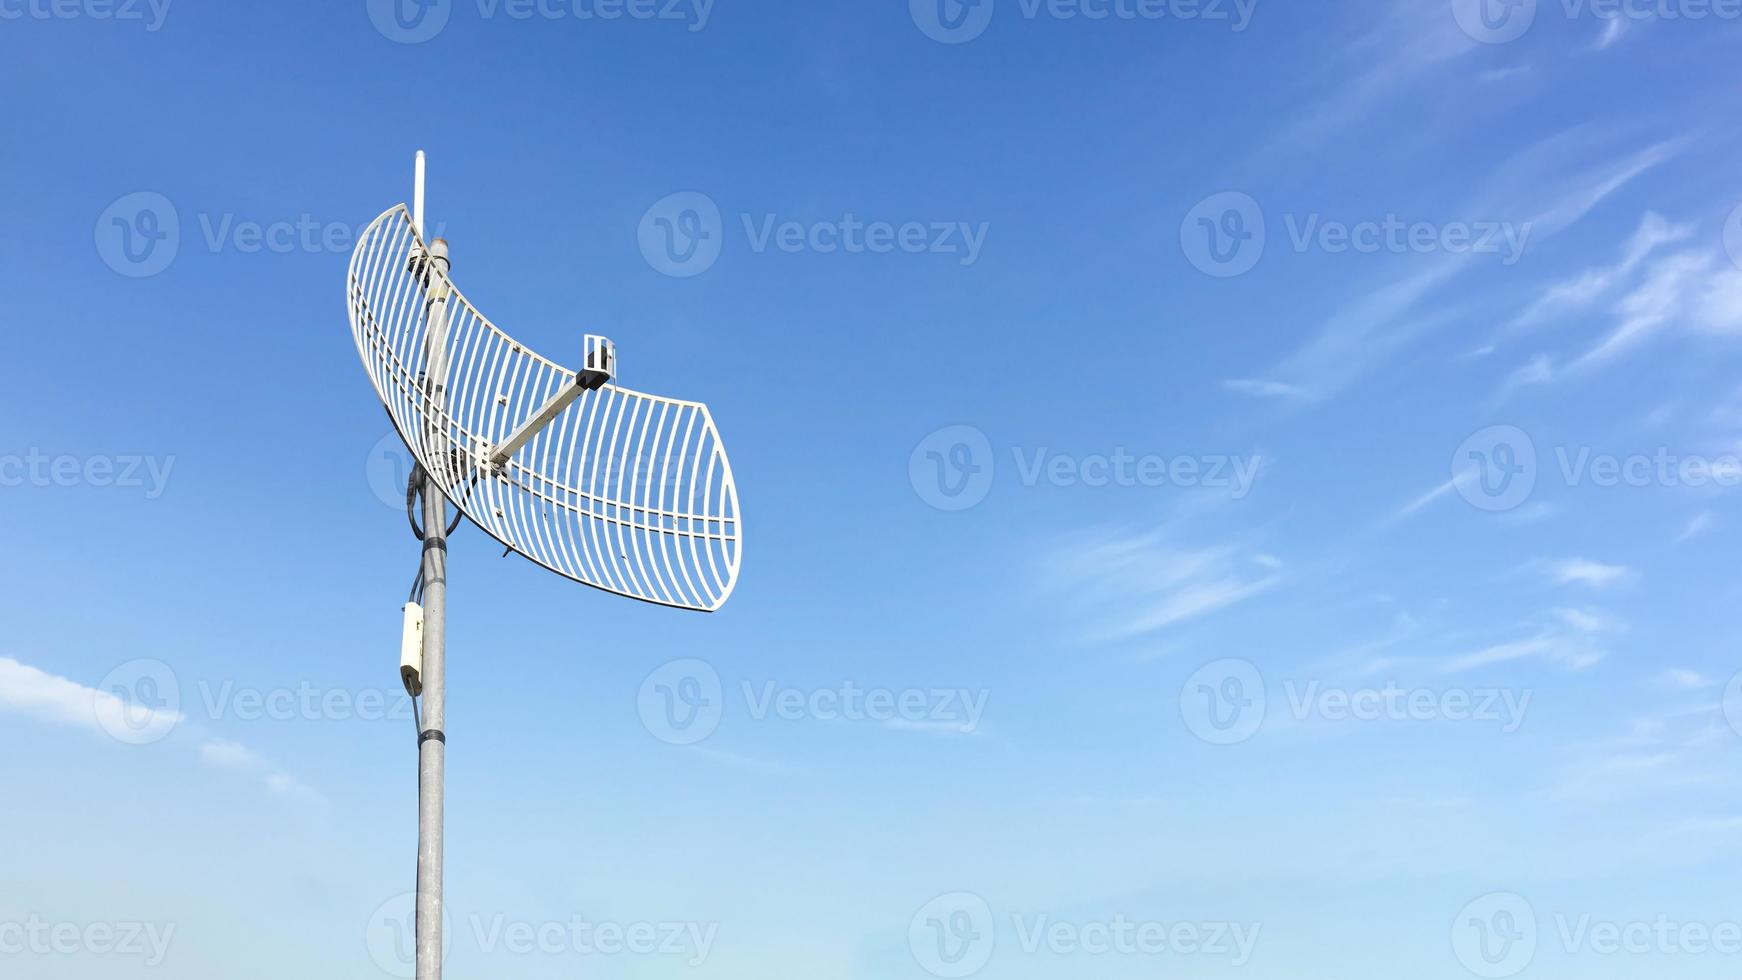 ricevitore internet wifi esterno e antenna ripetitore sul tetto dell'edificio con sfondo blu chiaro. foto